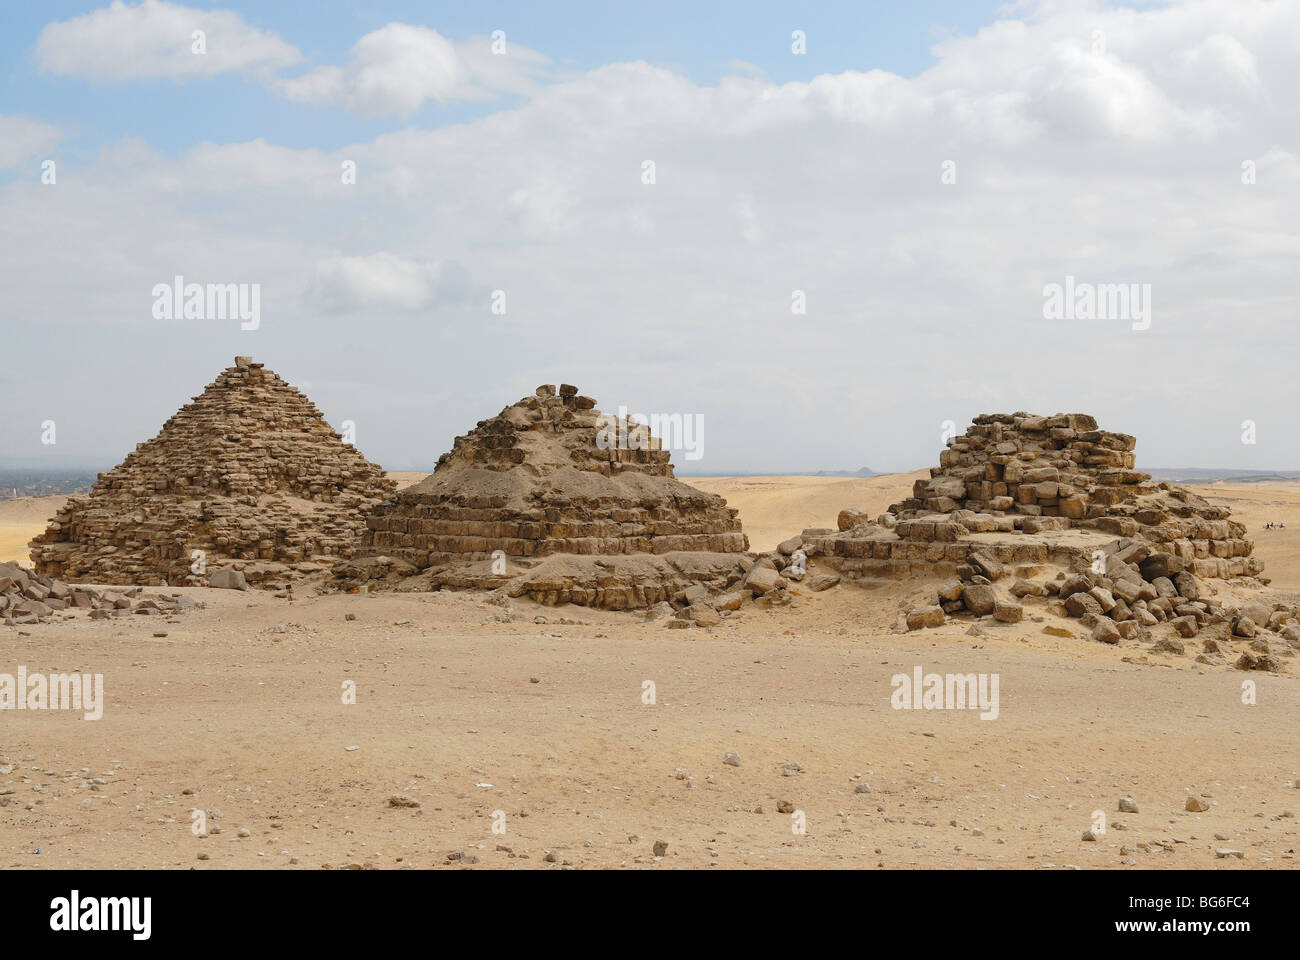 Les petites pyramides subsidiaires associés à l'Menkaourê pyramide de Gizeh, Egypte Banque D'Images